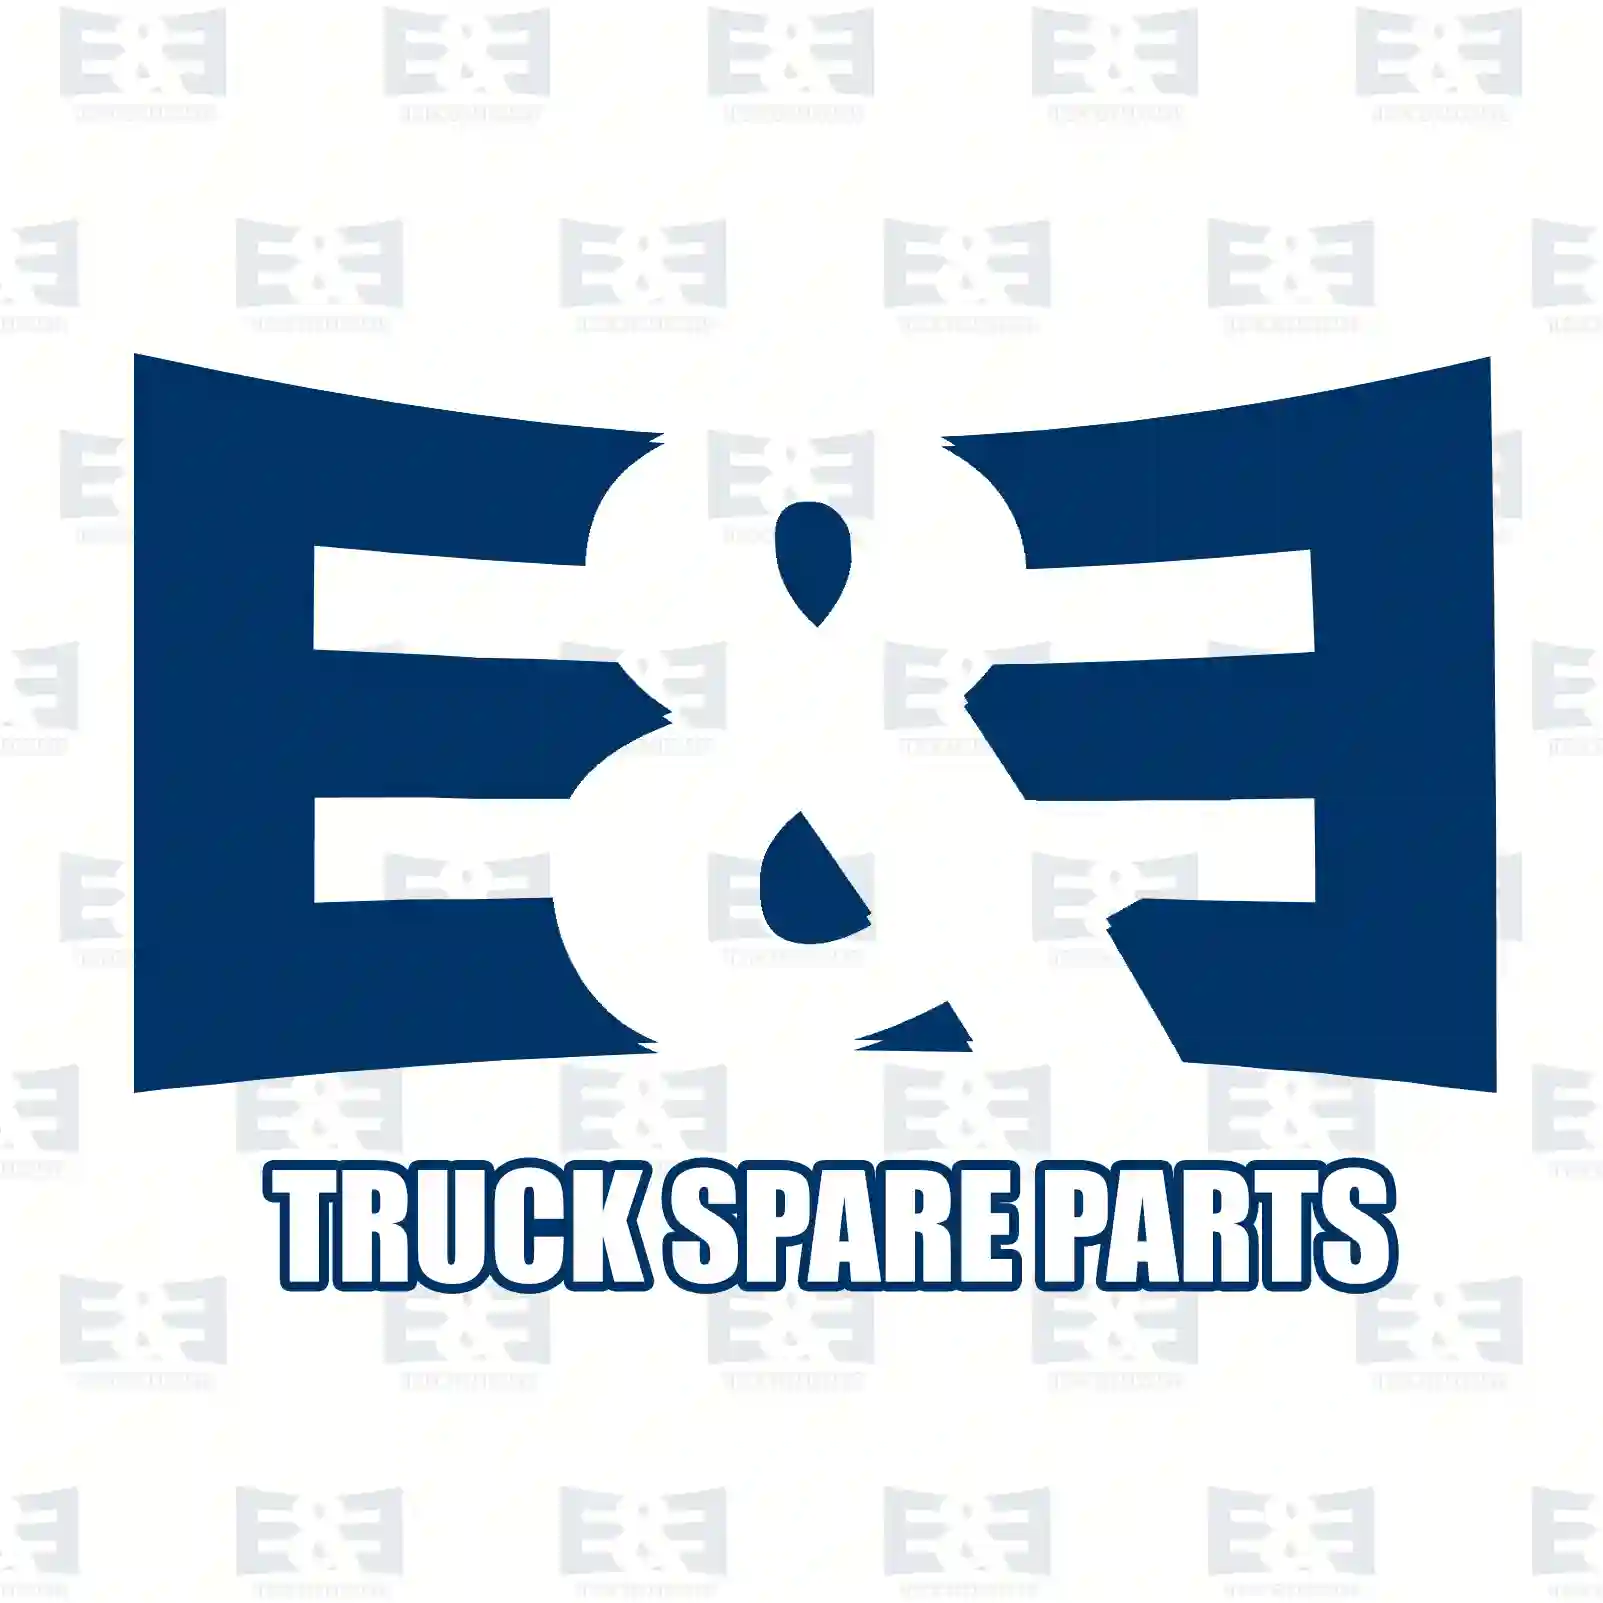 Unit injector, 2E2286096, 20544186, 85000318, 85000890, 85006318, 85006890 ||  2E2286096 E&E Truck Spare Parts | Truck Spare Parts, Auotomotive Spare Parts Unit injector, 2E2286096, 20544186, 85000318, 85000890, 85006318, 85006890 ||  2E2286096 E&E Truck Spare Parts | Truck Spare Parts, Auotomotive Spare Parts